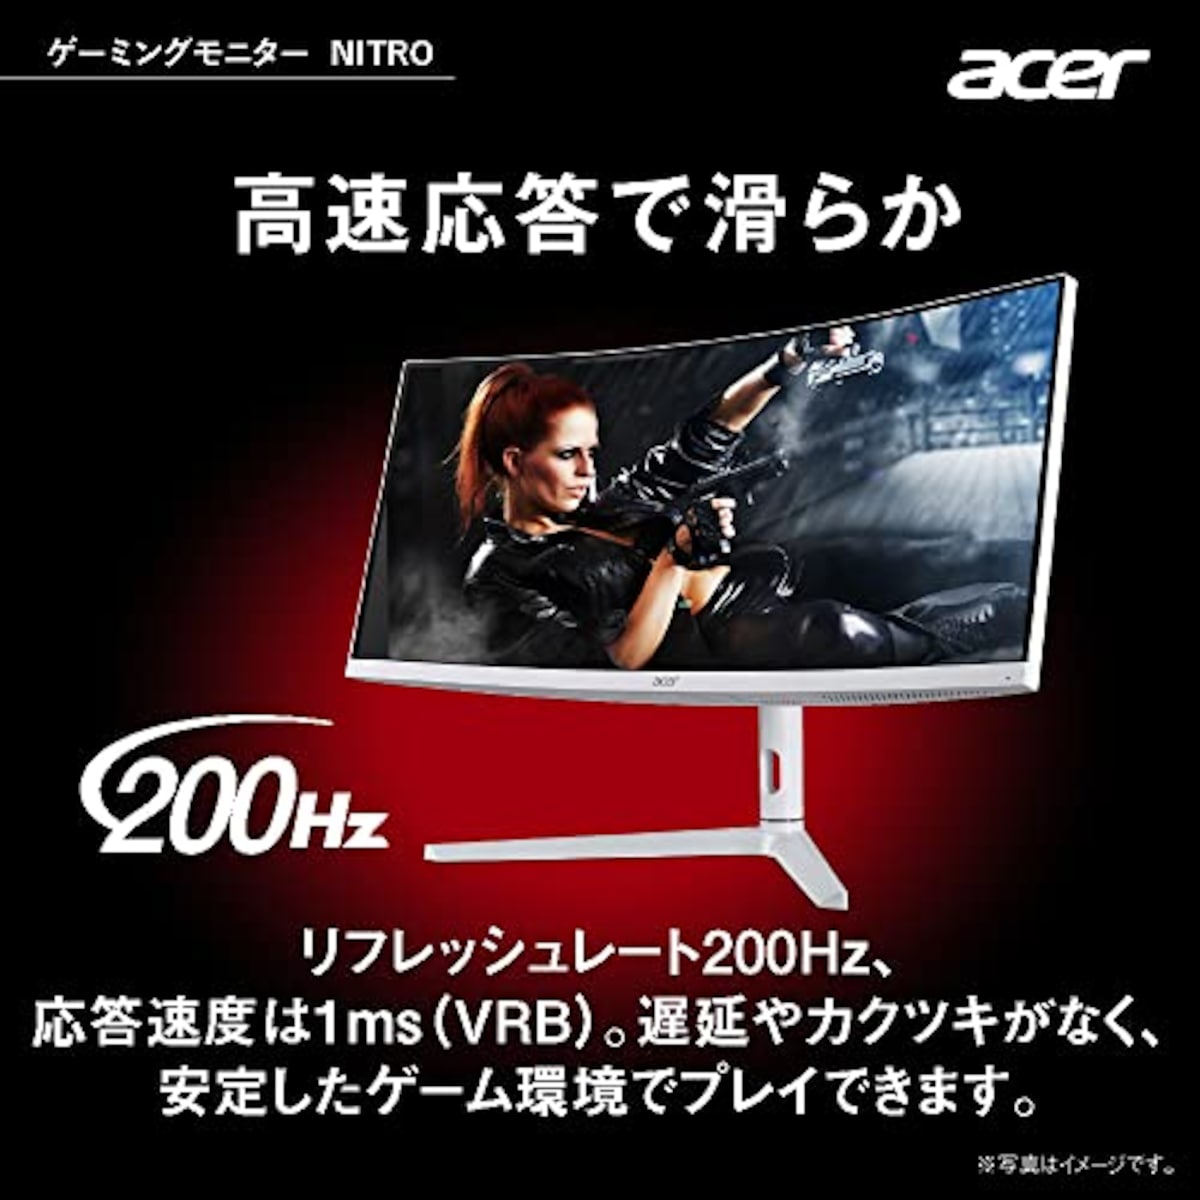  日本エイサー Acer ゲーミングモニター Nitro XZ306CXwmiiiphx 29.5インチ VA 非光沢 湾曲1500R UWFHD ウルトラワイド 1ms(VRB)200Hz(HDMI 180Hz) AMD FreeSync Premium スピーカー搭載 VESA DisplayHDR 400 広い視野角178° VESAマウント対応 高さ調整 ピボット スイベル チルト画像4 